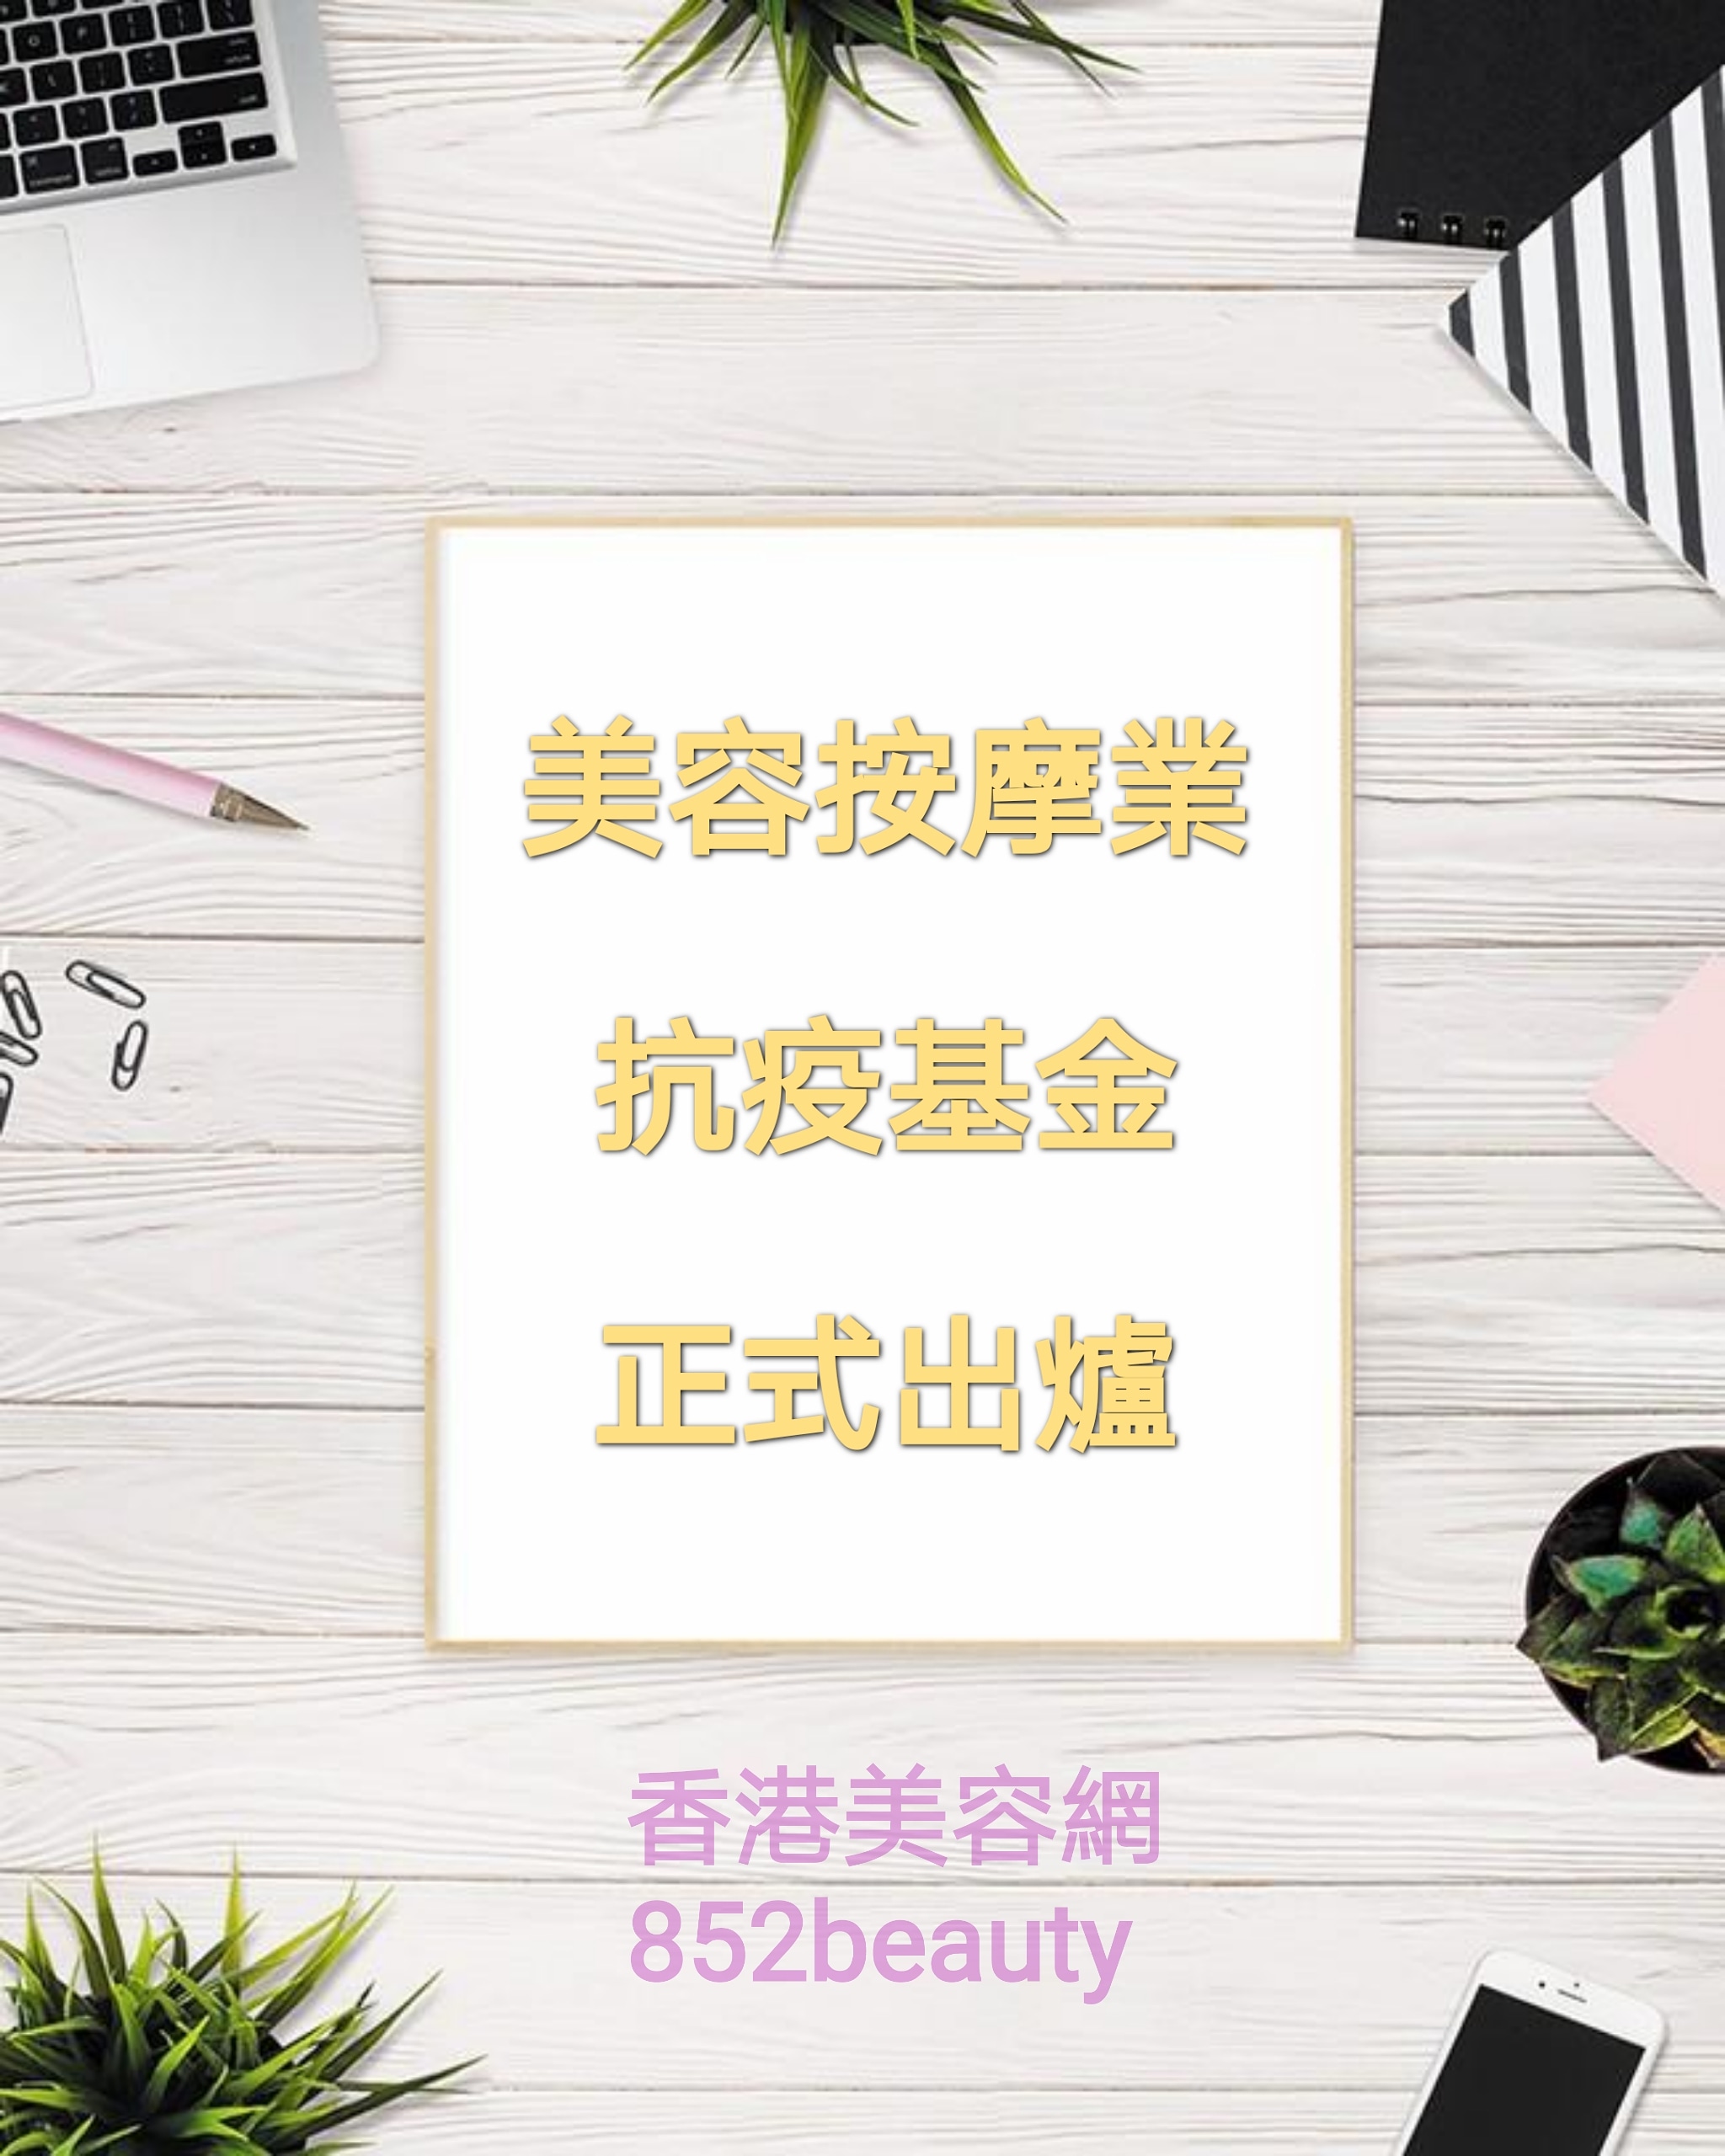 香港美容網 Hong Kong Beauty Salon 最新美容資訊: 第一輪防疫抗疫基金「美容院、按摩院及派對房間資助計劃」